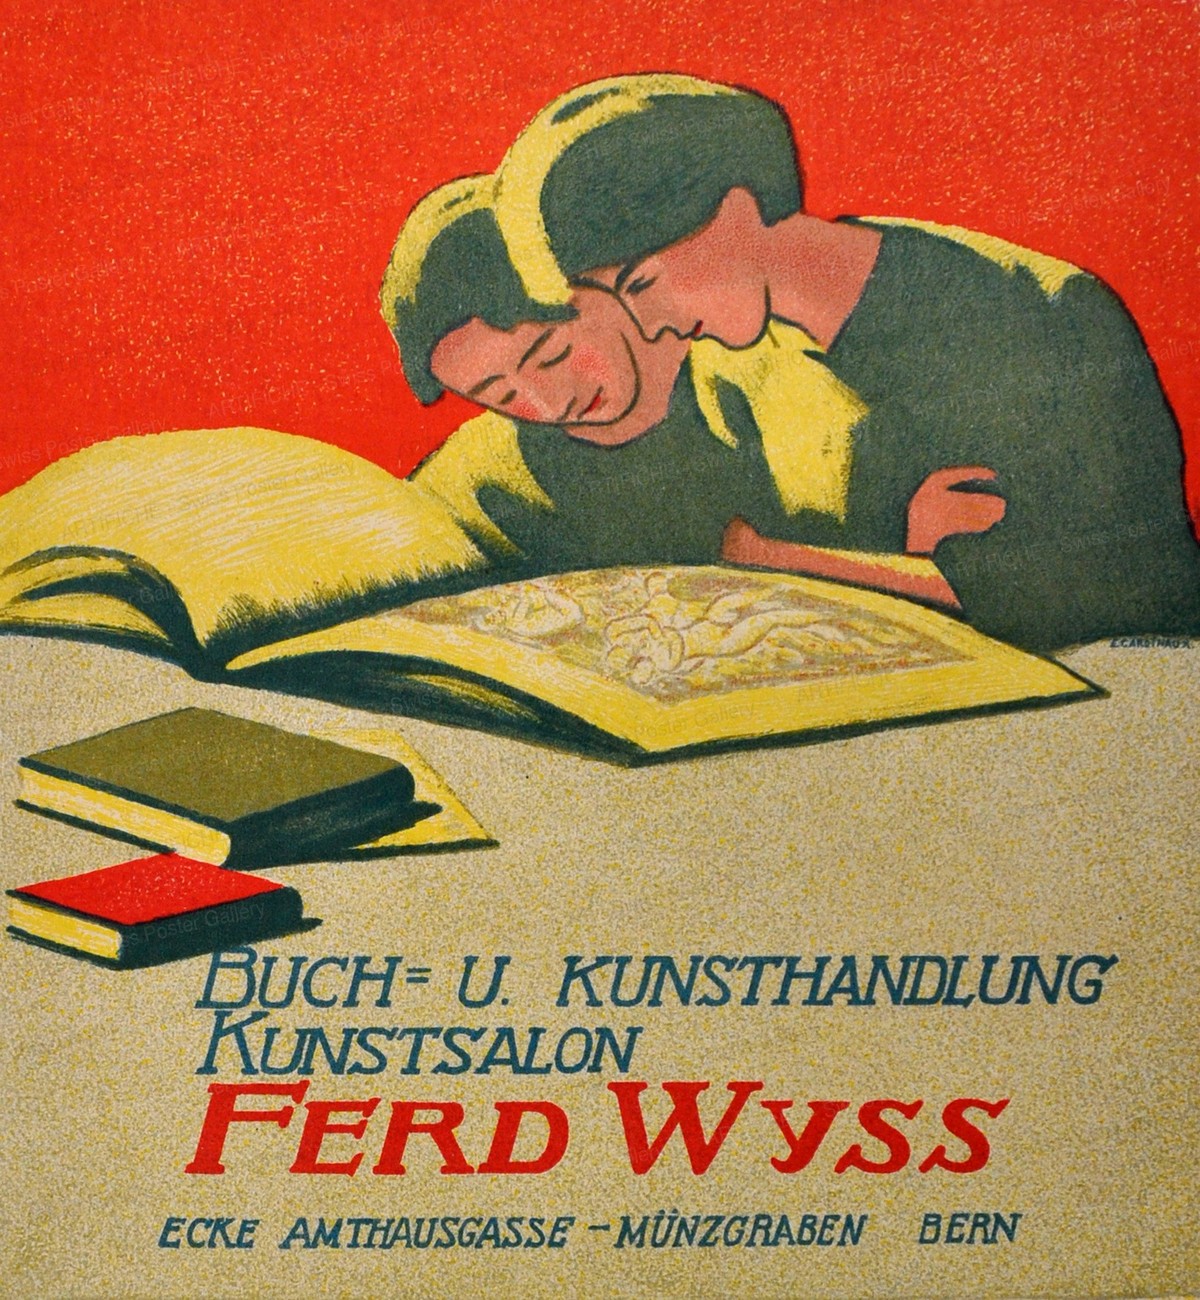 Buch- u. Kunsthandlung Kunstsalon Ferd Wyss Bern, Emil Cardinaux